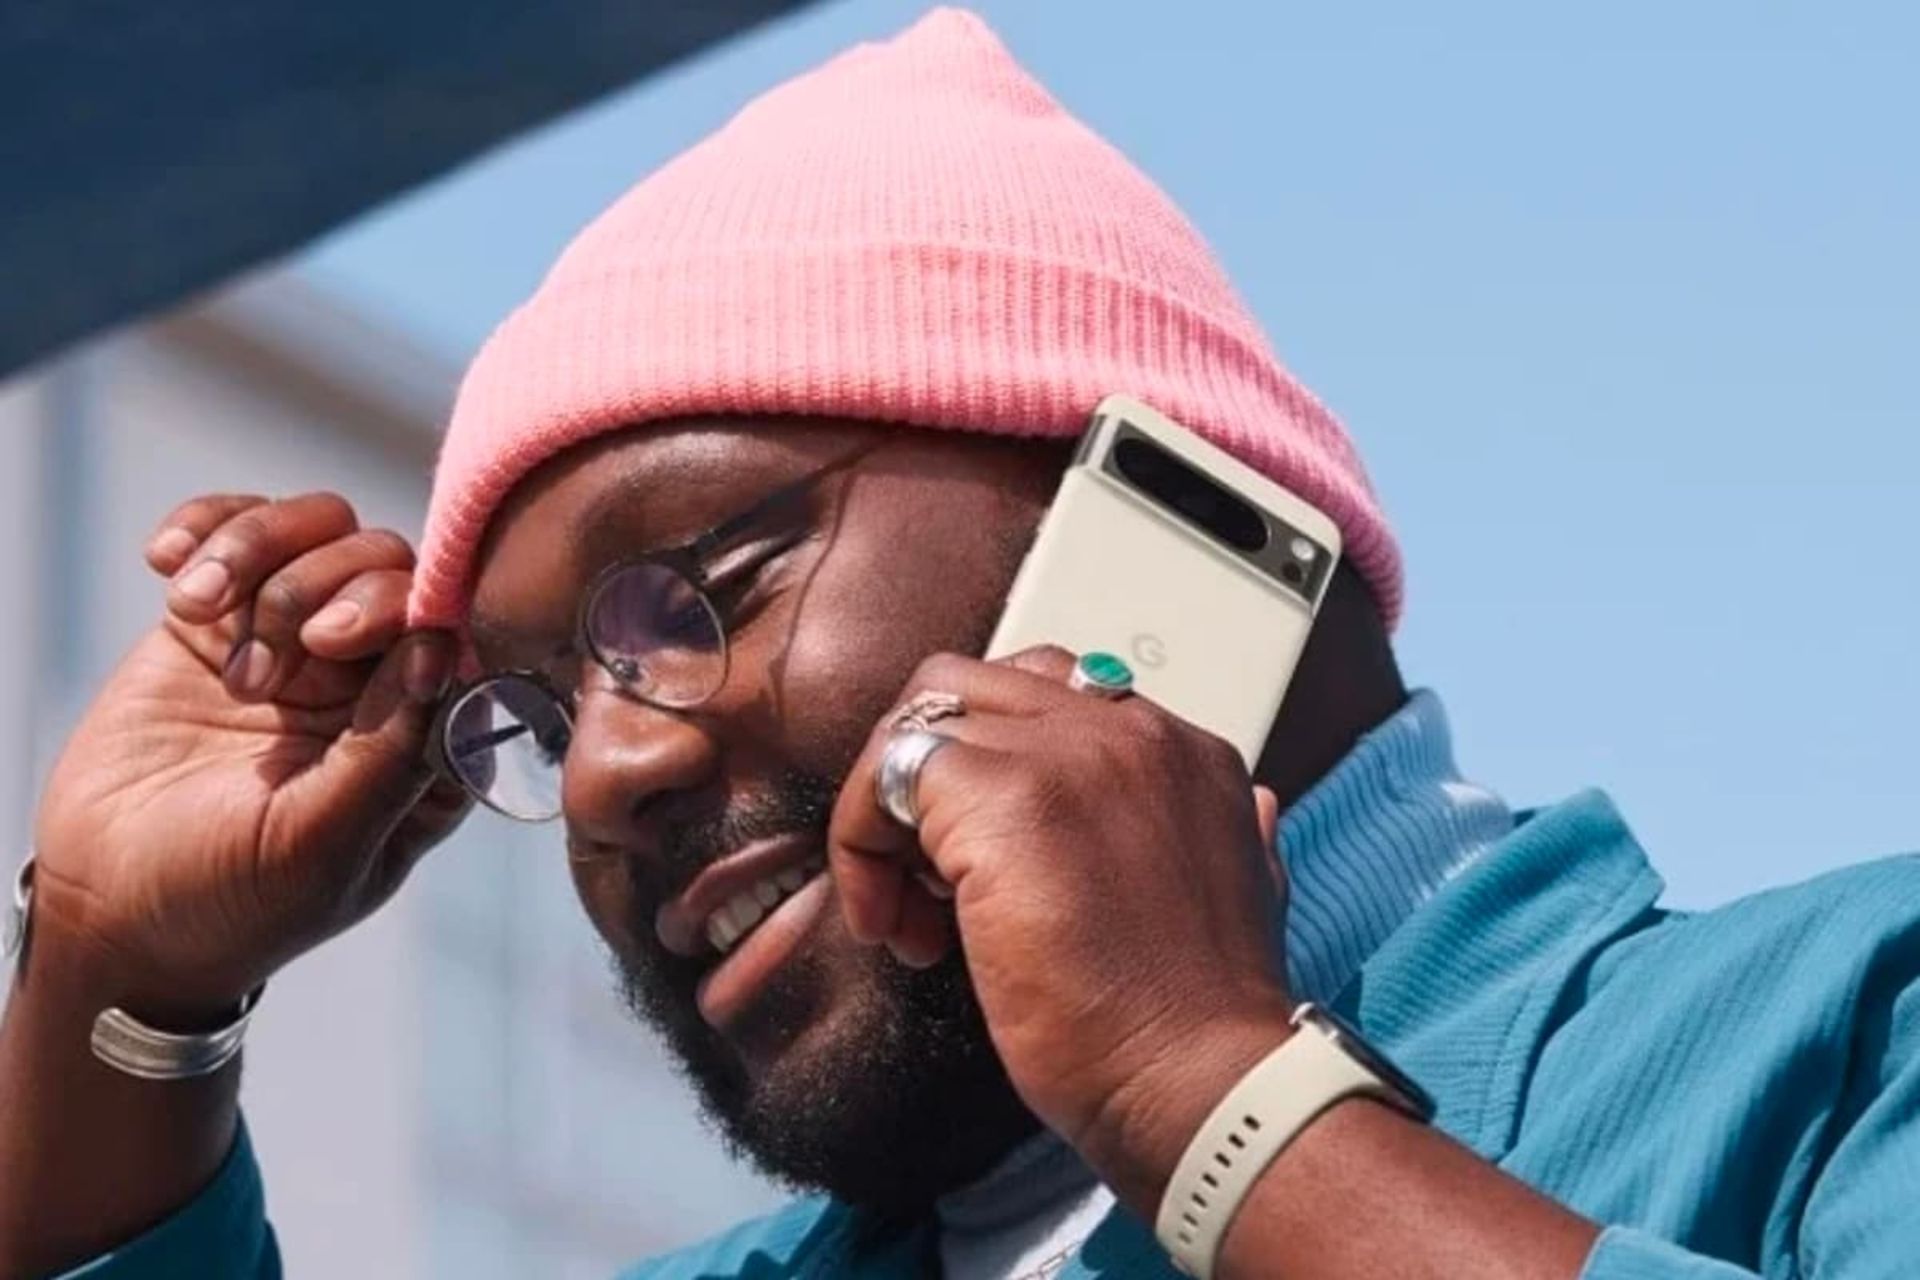 مرد سیاه پوست در حال تماس با پیکسل ۸ پرو گوگل / Google Pixel 8 Pro